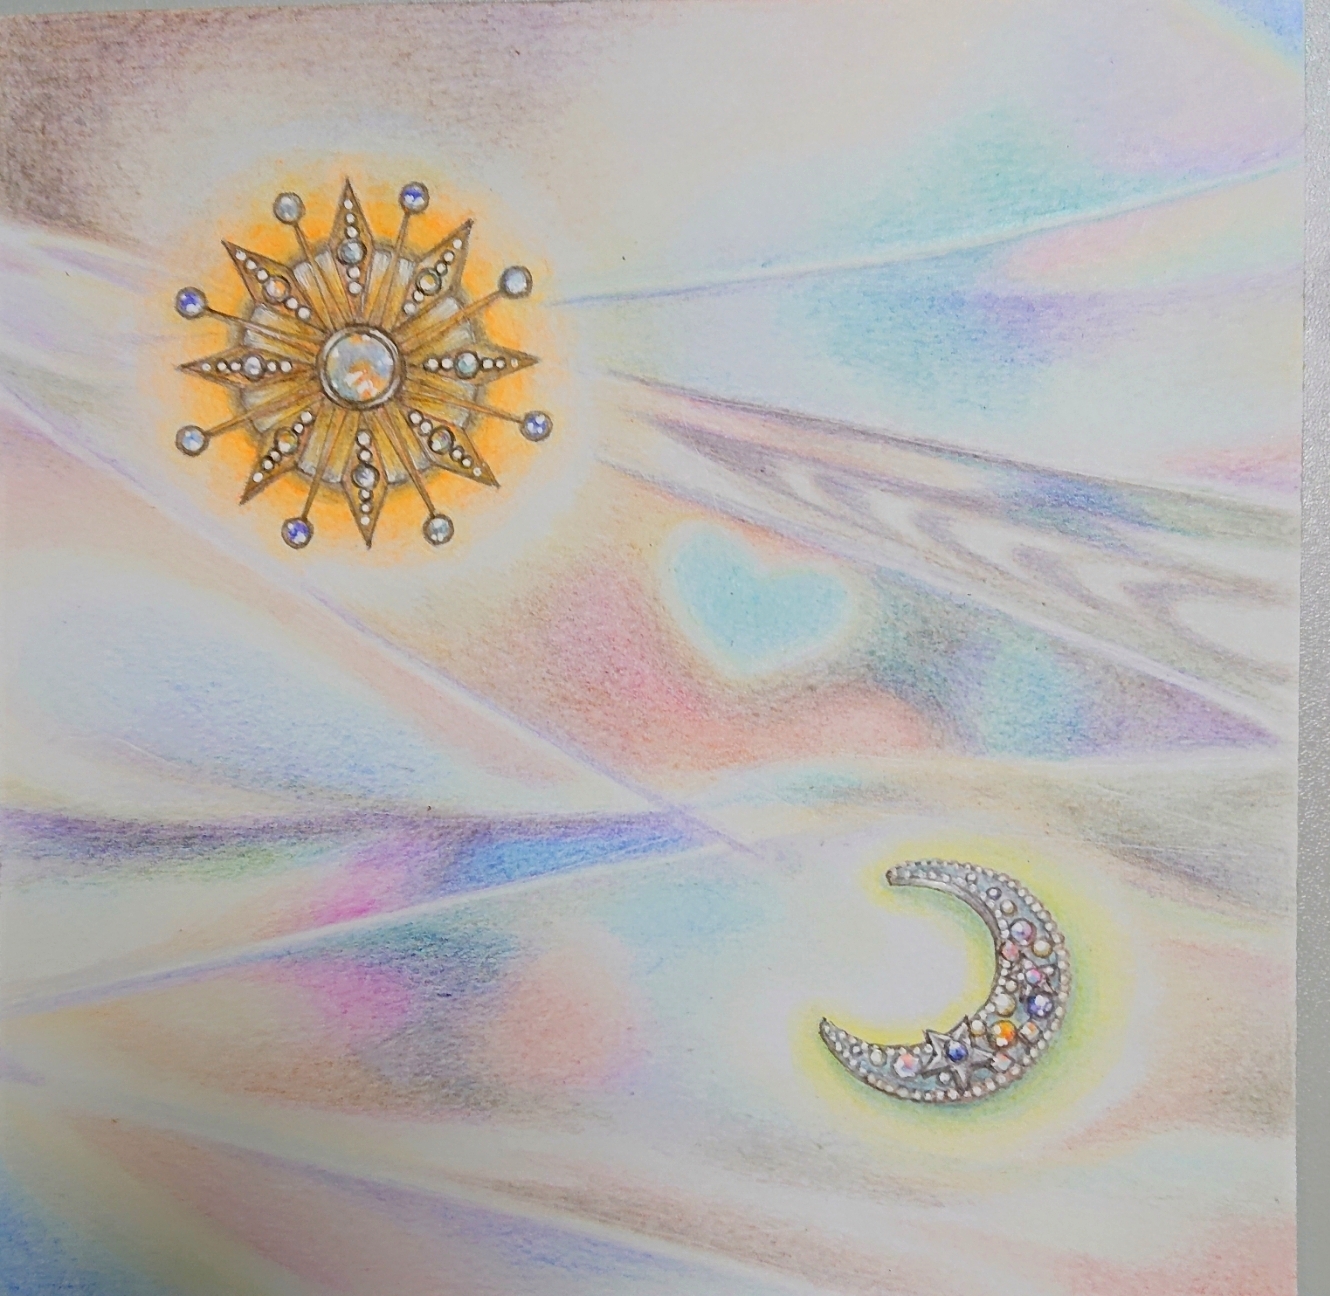 ツインレイアート「月と太陽」